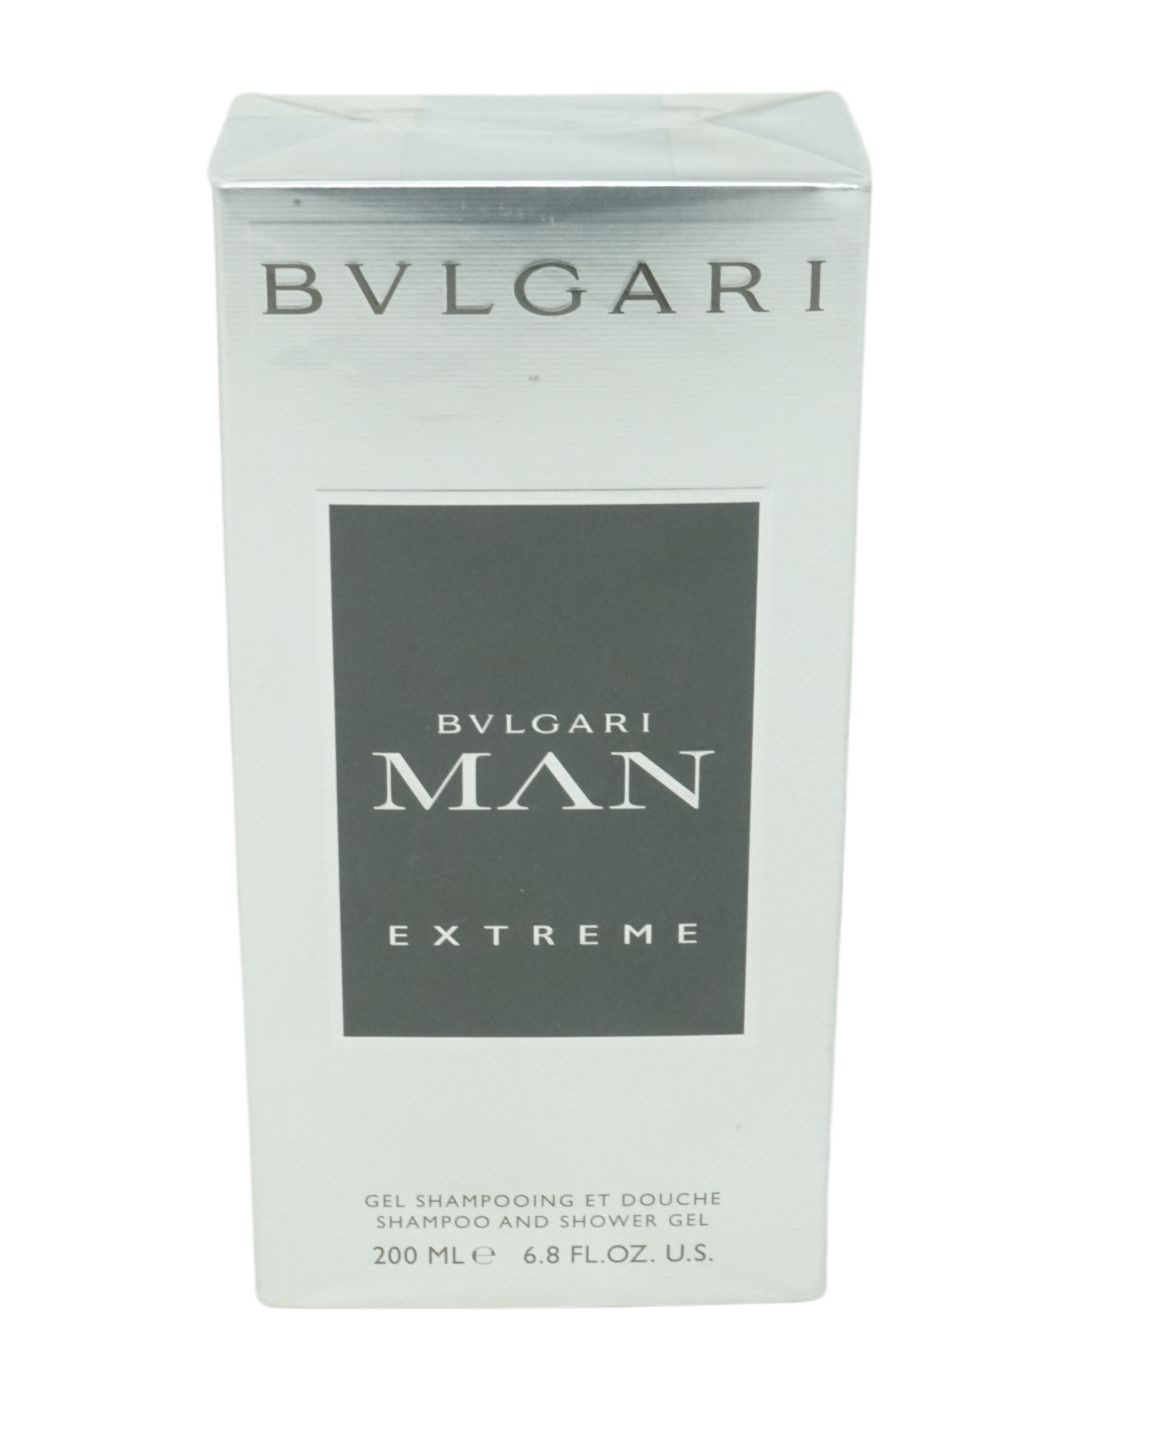 BVLGARI Duschgel Bvlgari Man Extreme Shampoo and Shower Gel 200ml